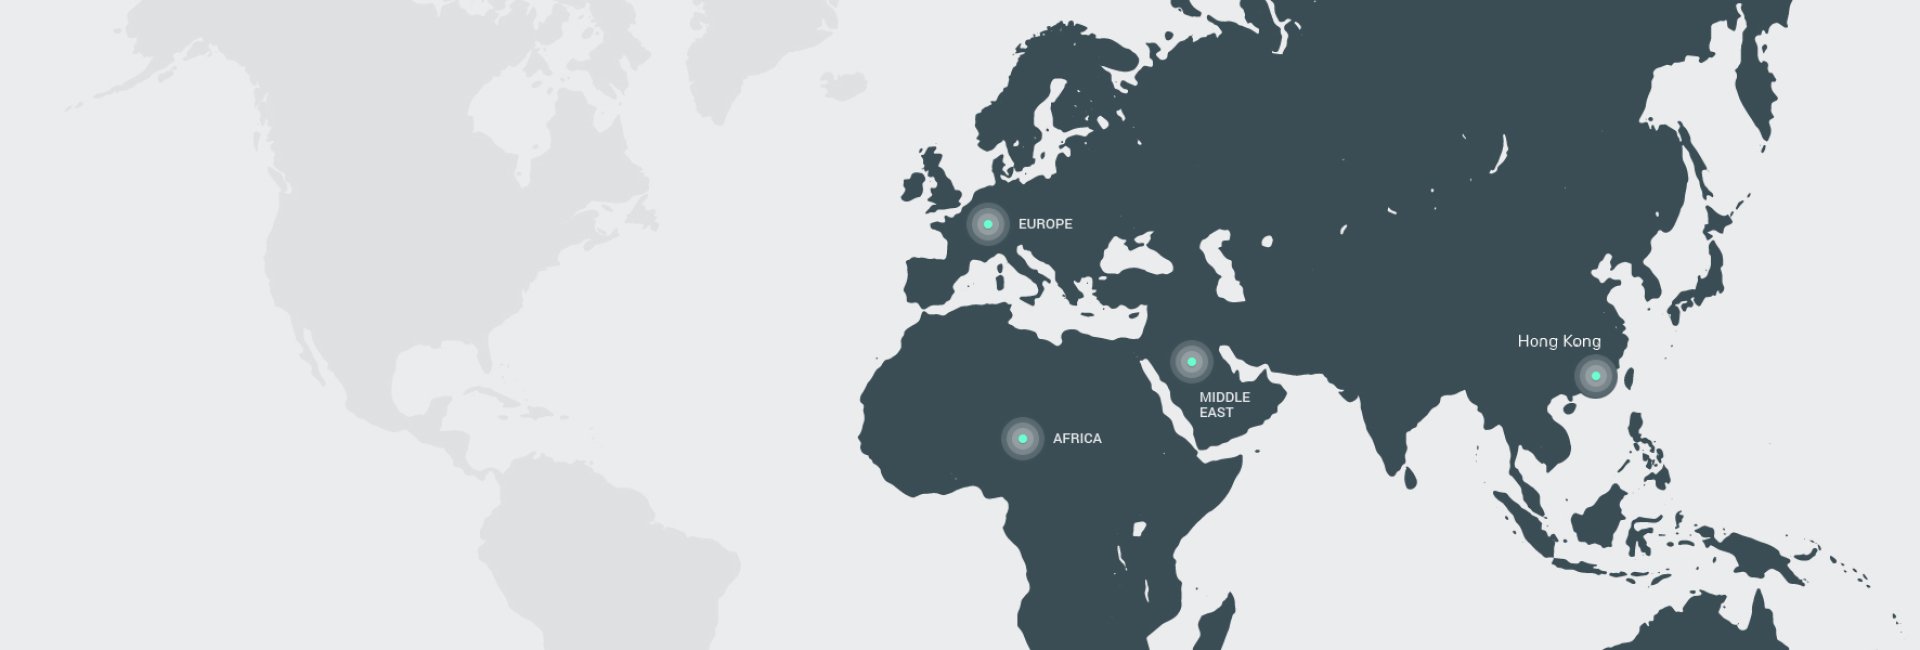 Acies International - Maps